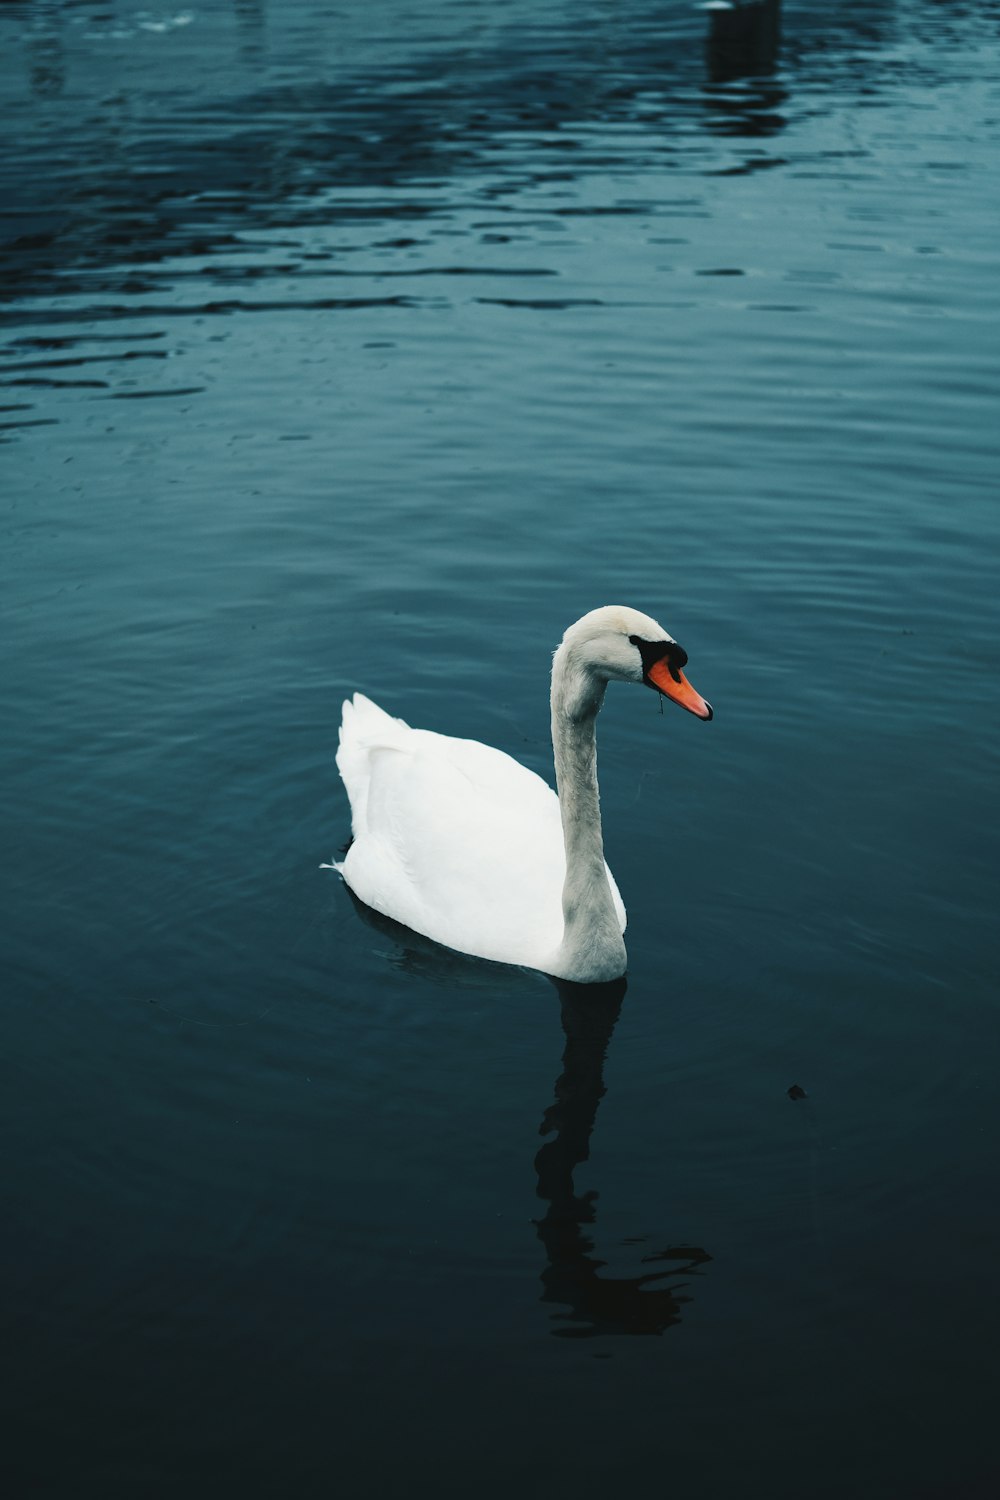 Un cisne blanco flotando sobre un cuerpo de agua